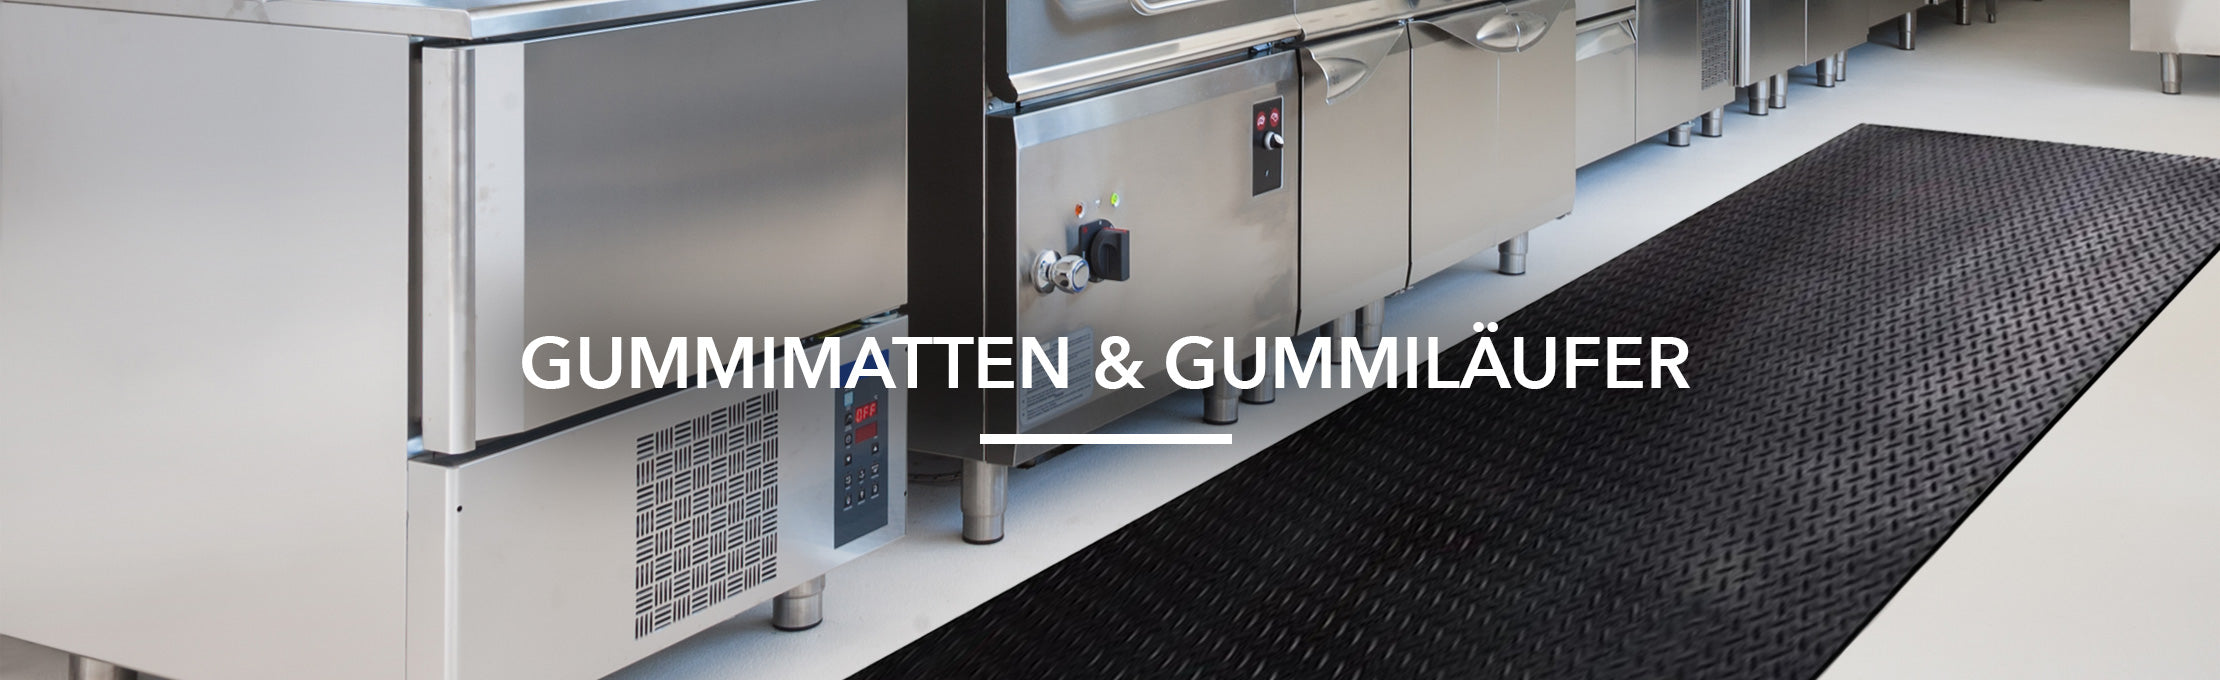 Gummimatte Meterware TPE - Glatt Grau 3mm online kaufen